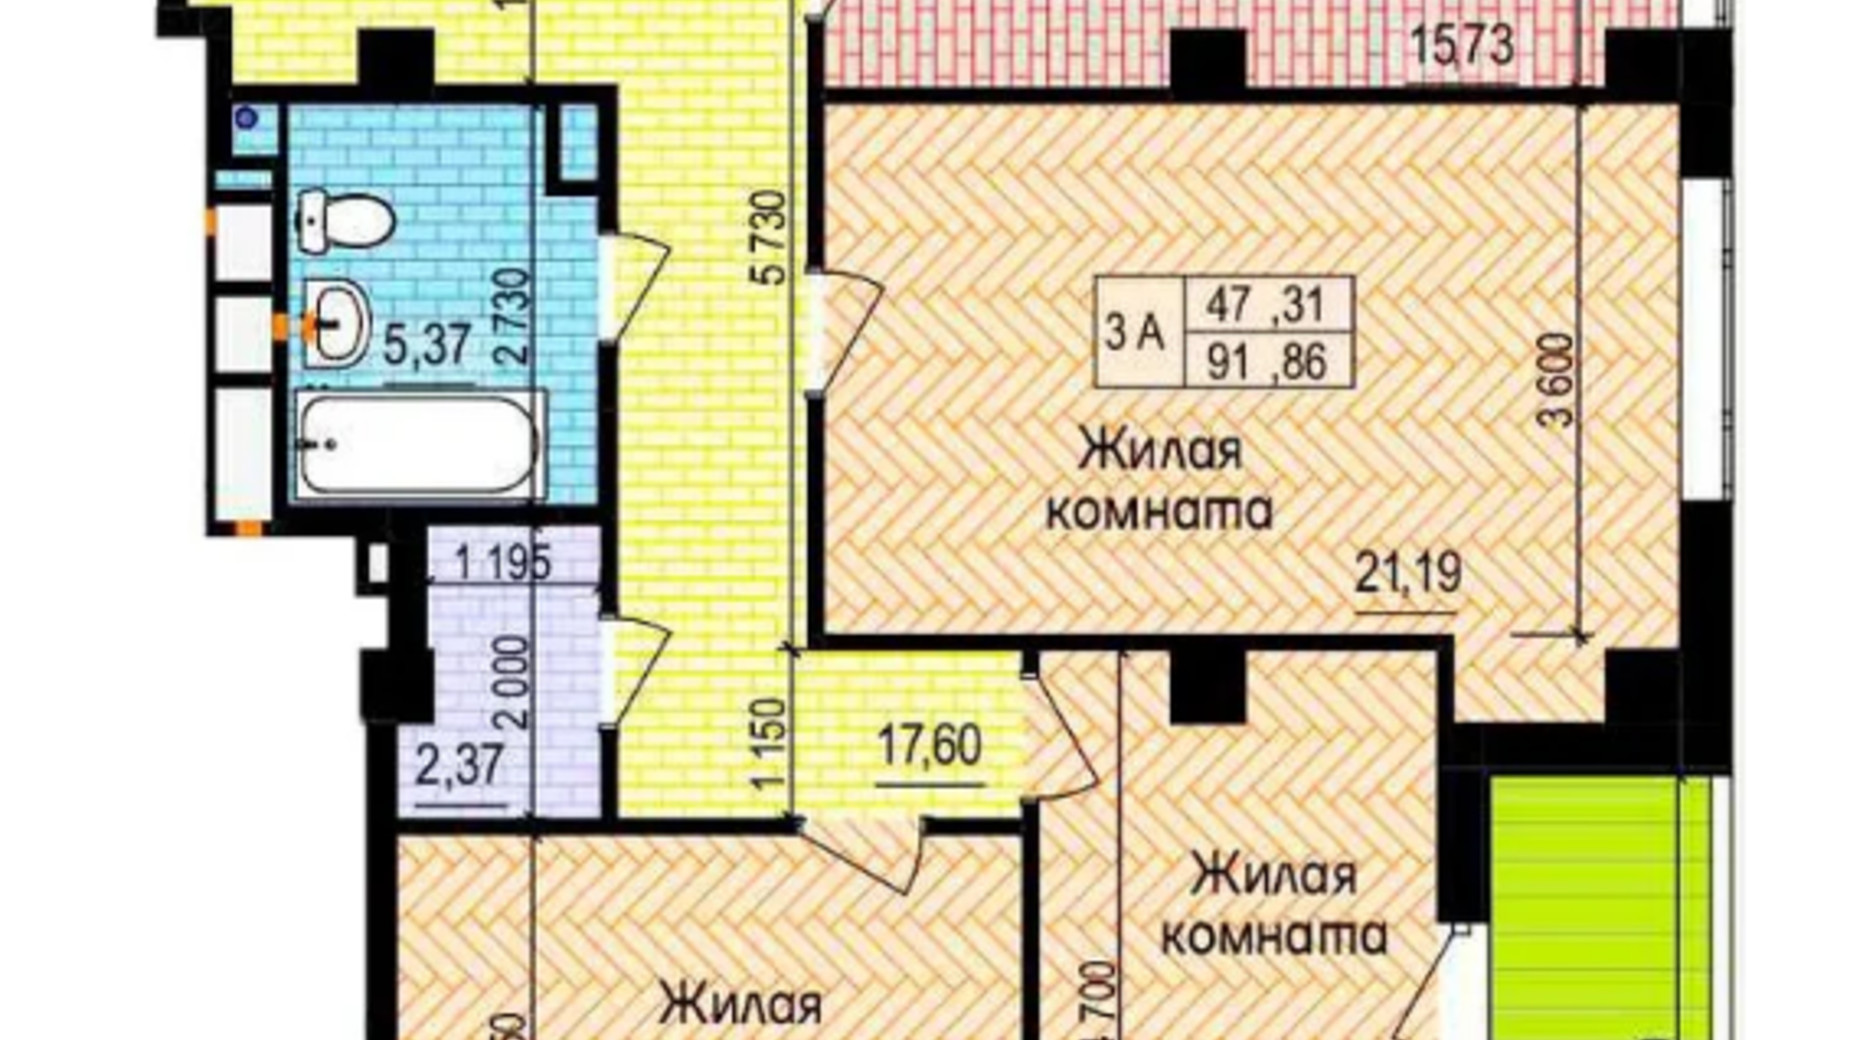 Планировка 3-комнатной квартиры в ЖК Пролисок 91.86 м², фото 550814